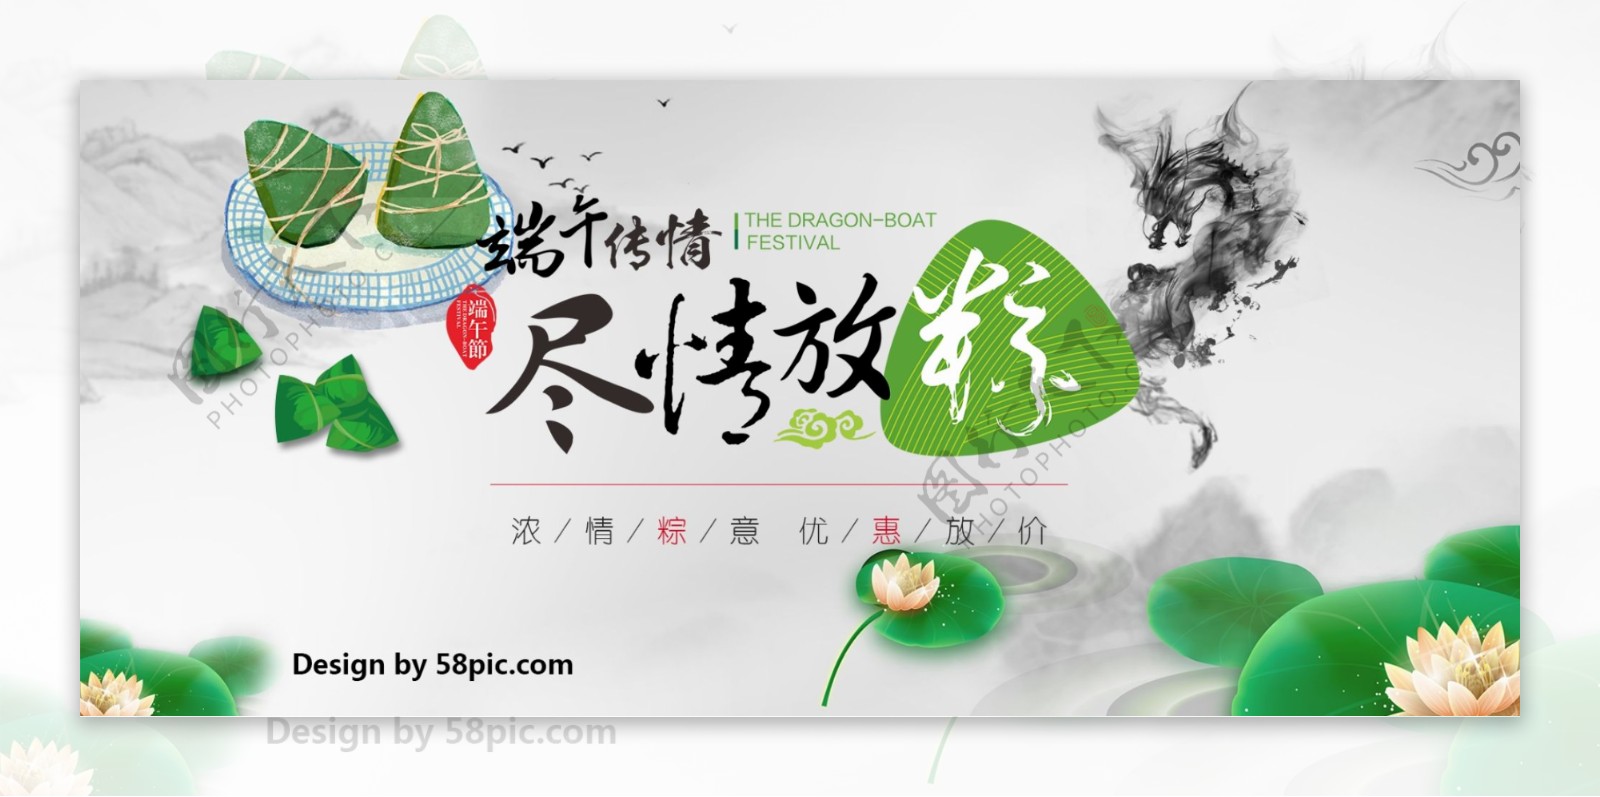 端午传情尽情放纵粽子节端午节绿色清新卖粽子淘宝店banner海报